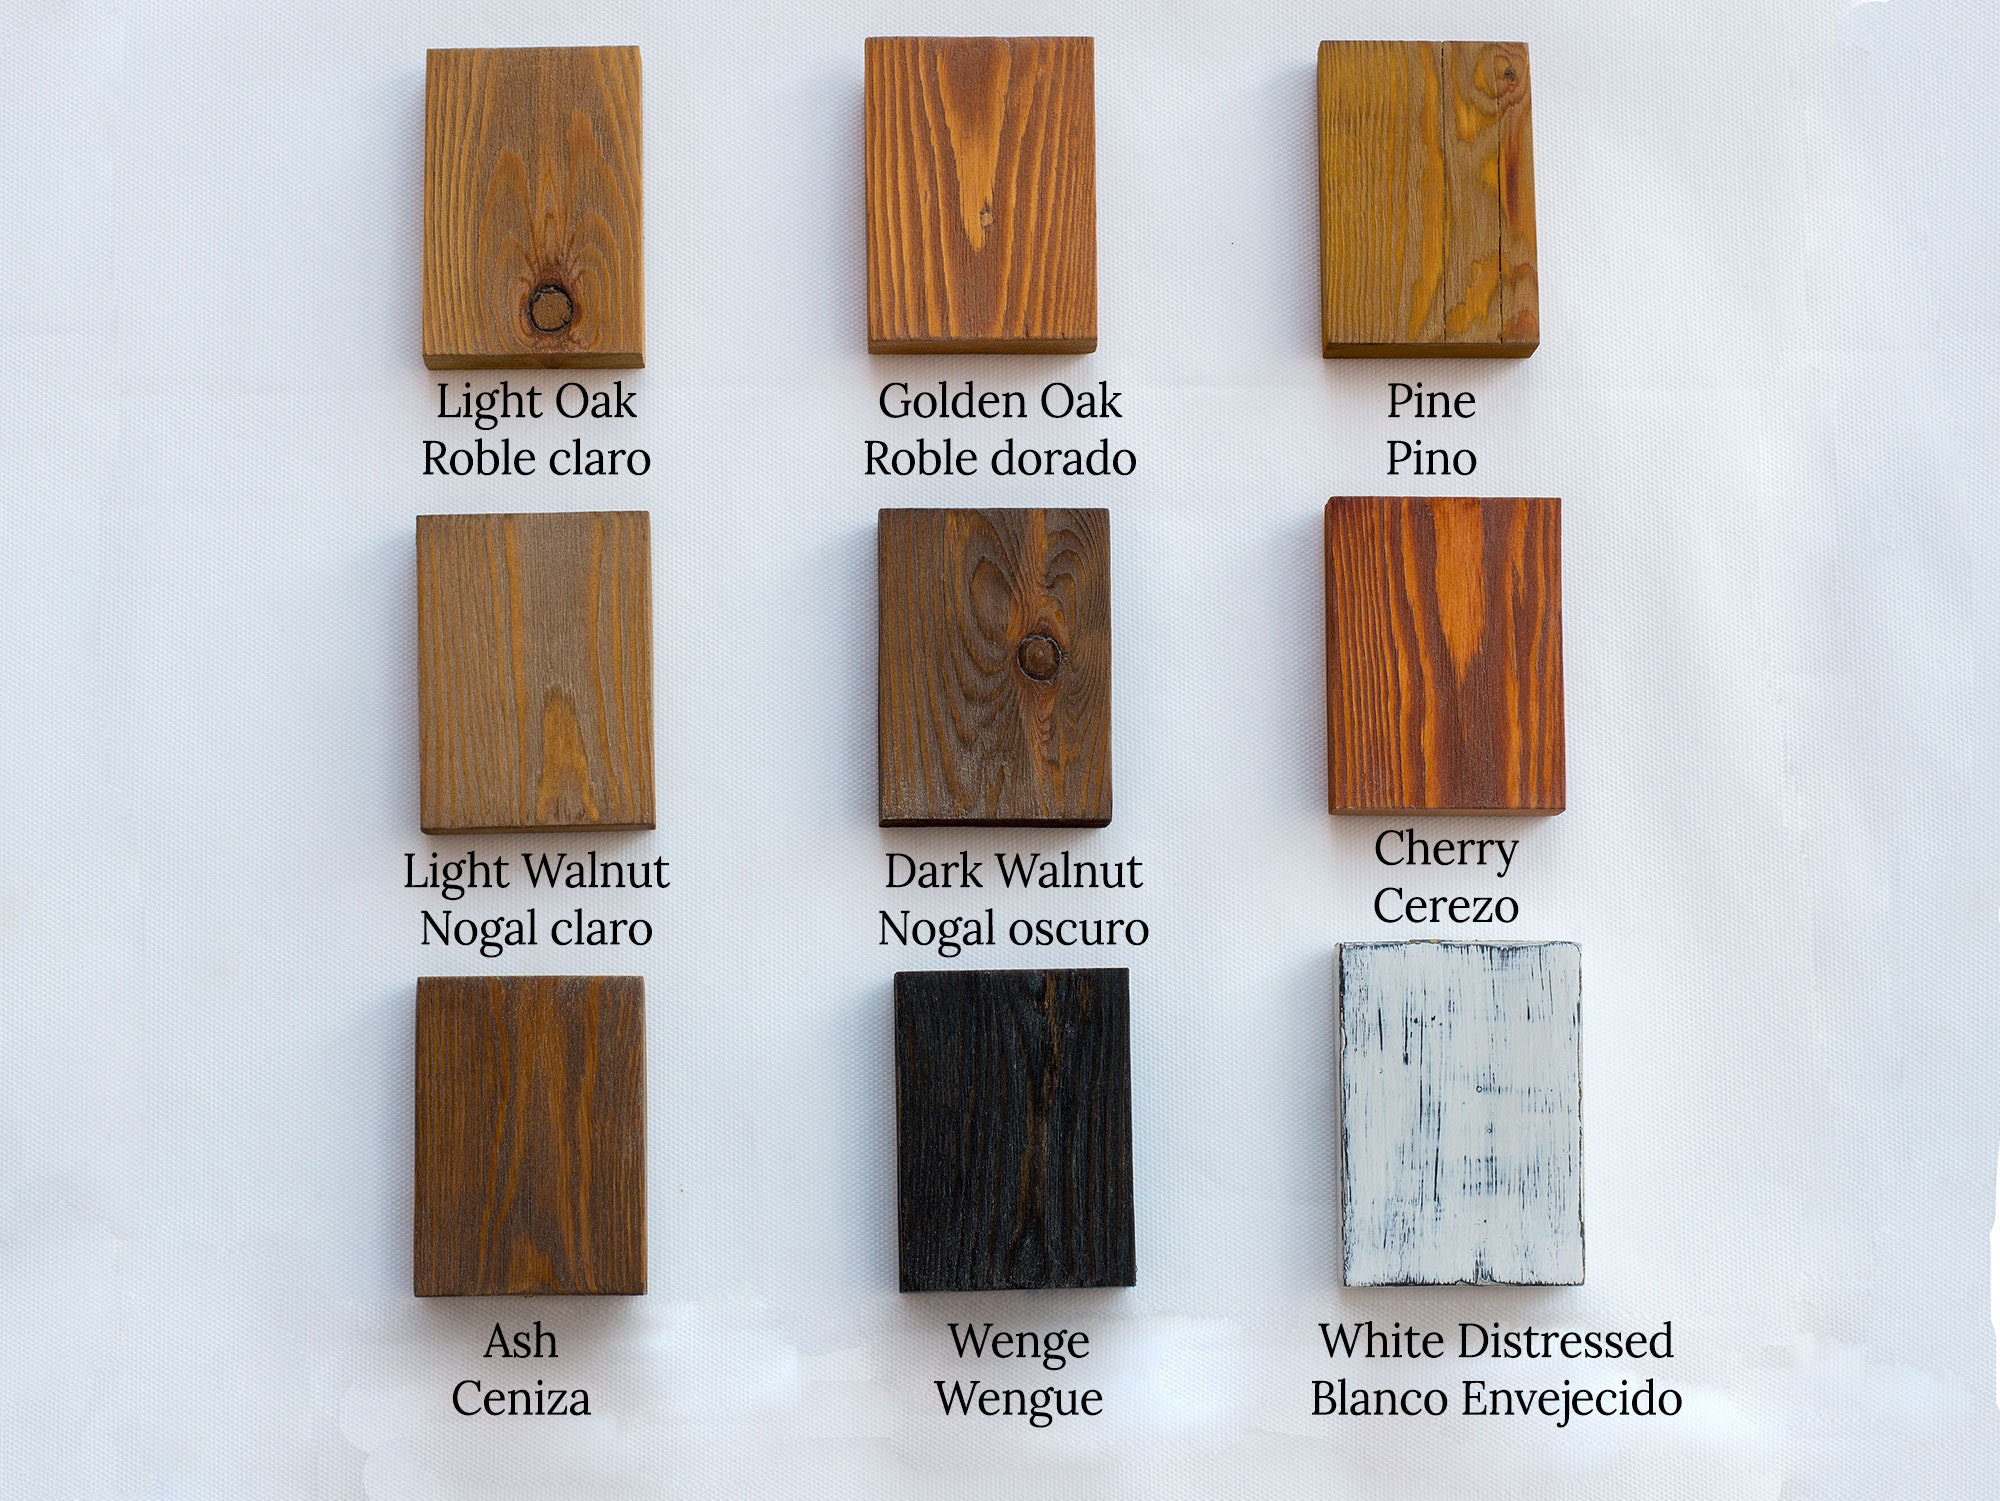 AOCEAN Letras de madera grandes blancas de 10 pulgadas, letras de madera  sin terminar para decoración de pared, letras decorativas de pie en  rodajas